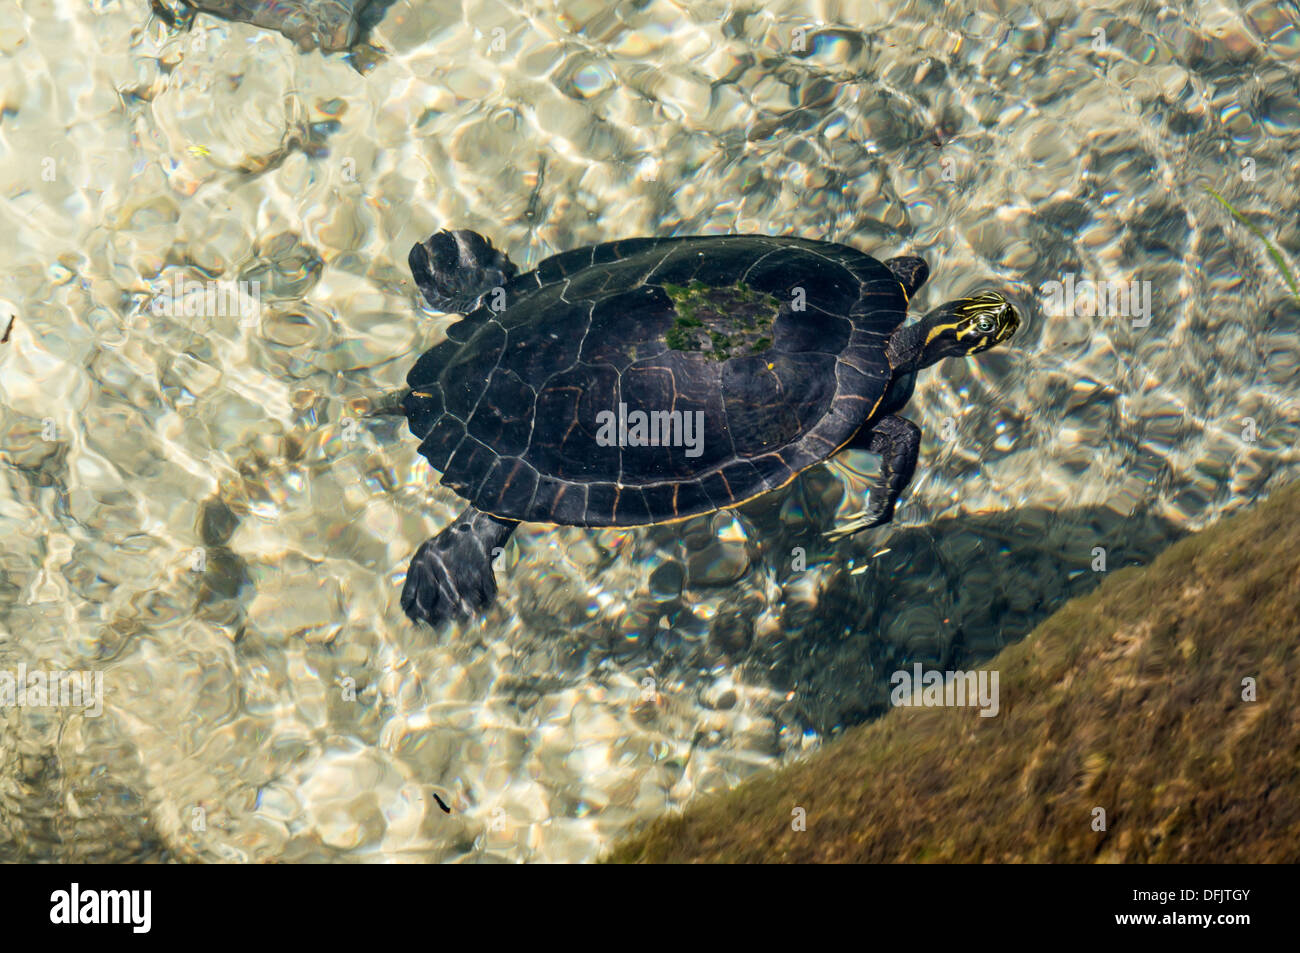 Pianura Costiera cooter (Pseudemys concinna floridana) o Florida cooter, specie di grandi erbivori tartarughe di acqua dolce nuoto. Foto Stock